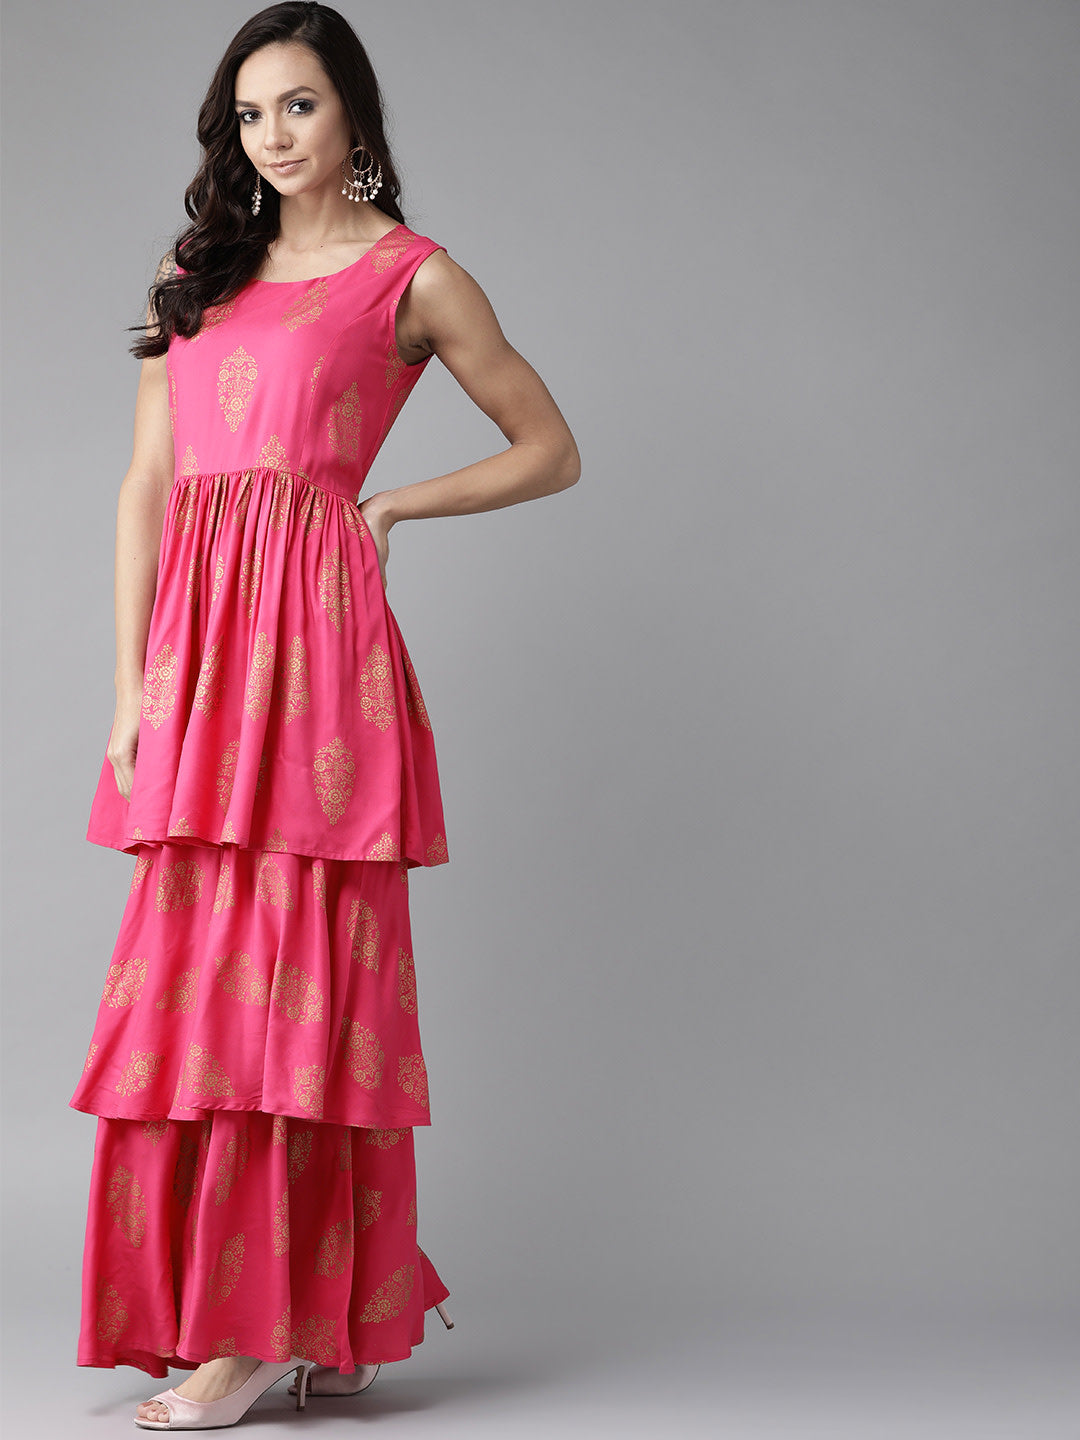 Women's Pink & Golden Foil Print Sharara Set With Dupatta